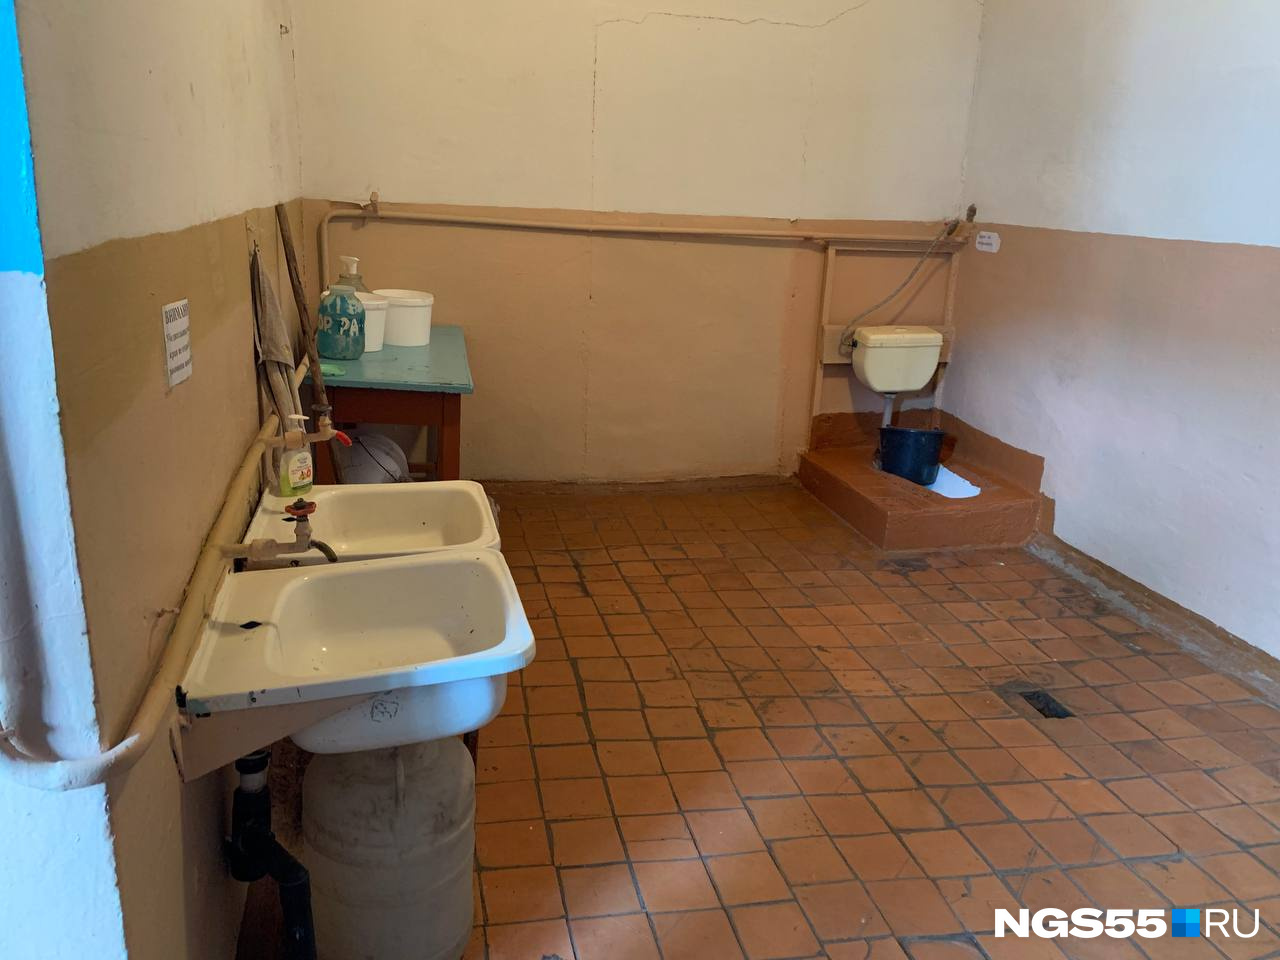 Туалет в ДК обещали отремонтировать